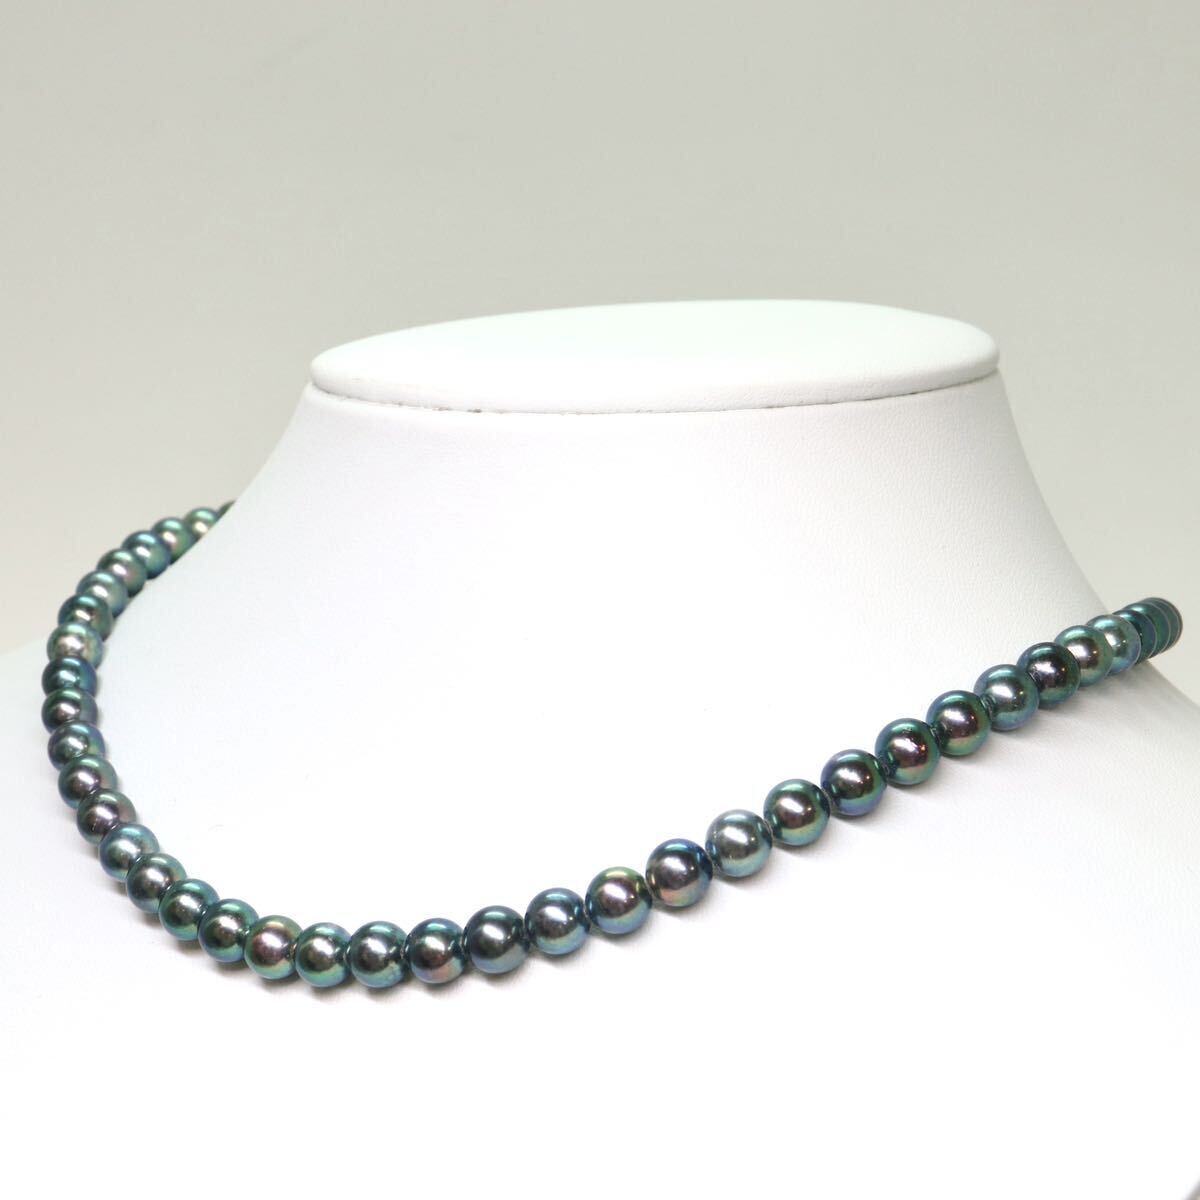 《アコヤ本真珠ネックレス》A 約6.5-7.0mm珠 29.9g 約42cm pearl necklace ジュエリー jewelry DA0/DA5の画像3